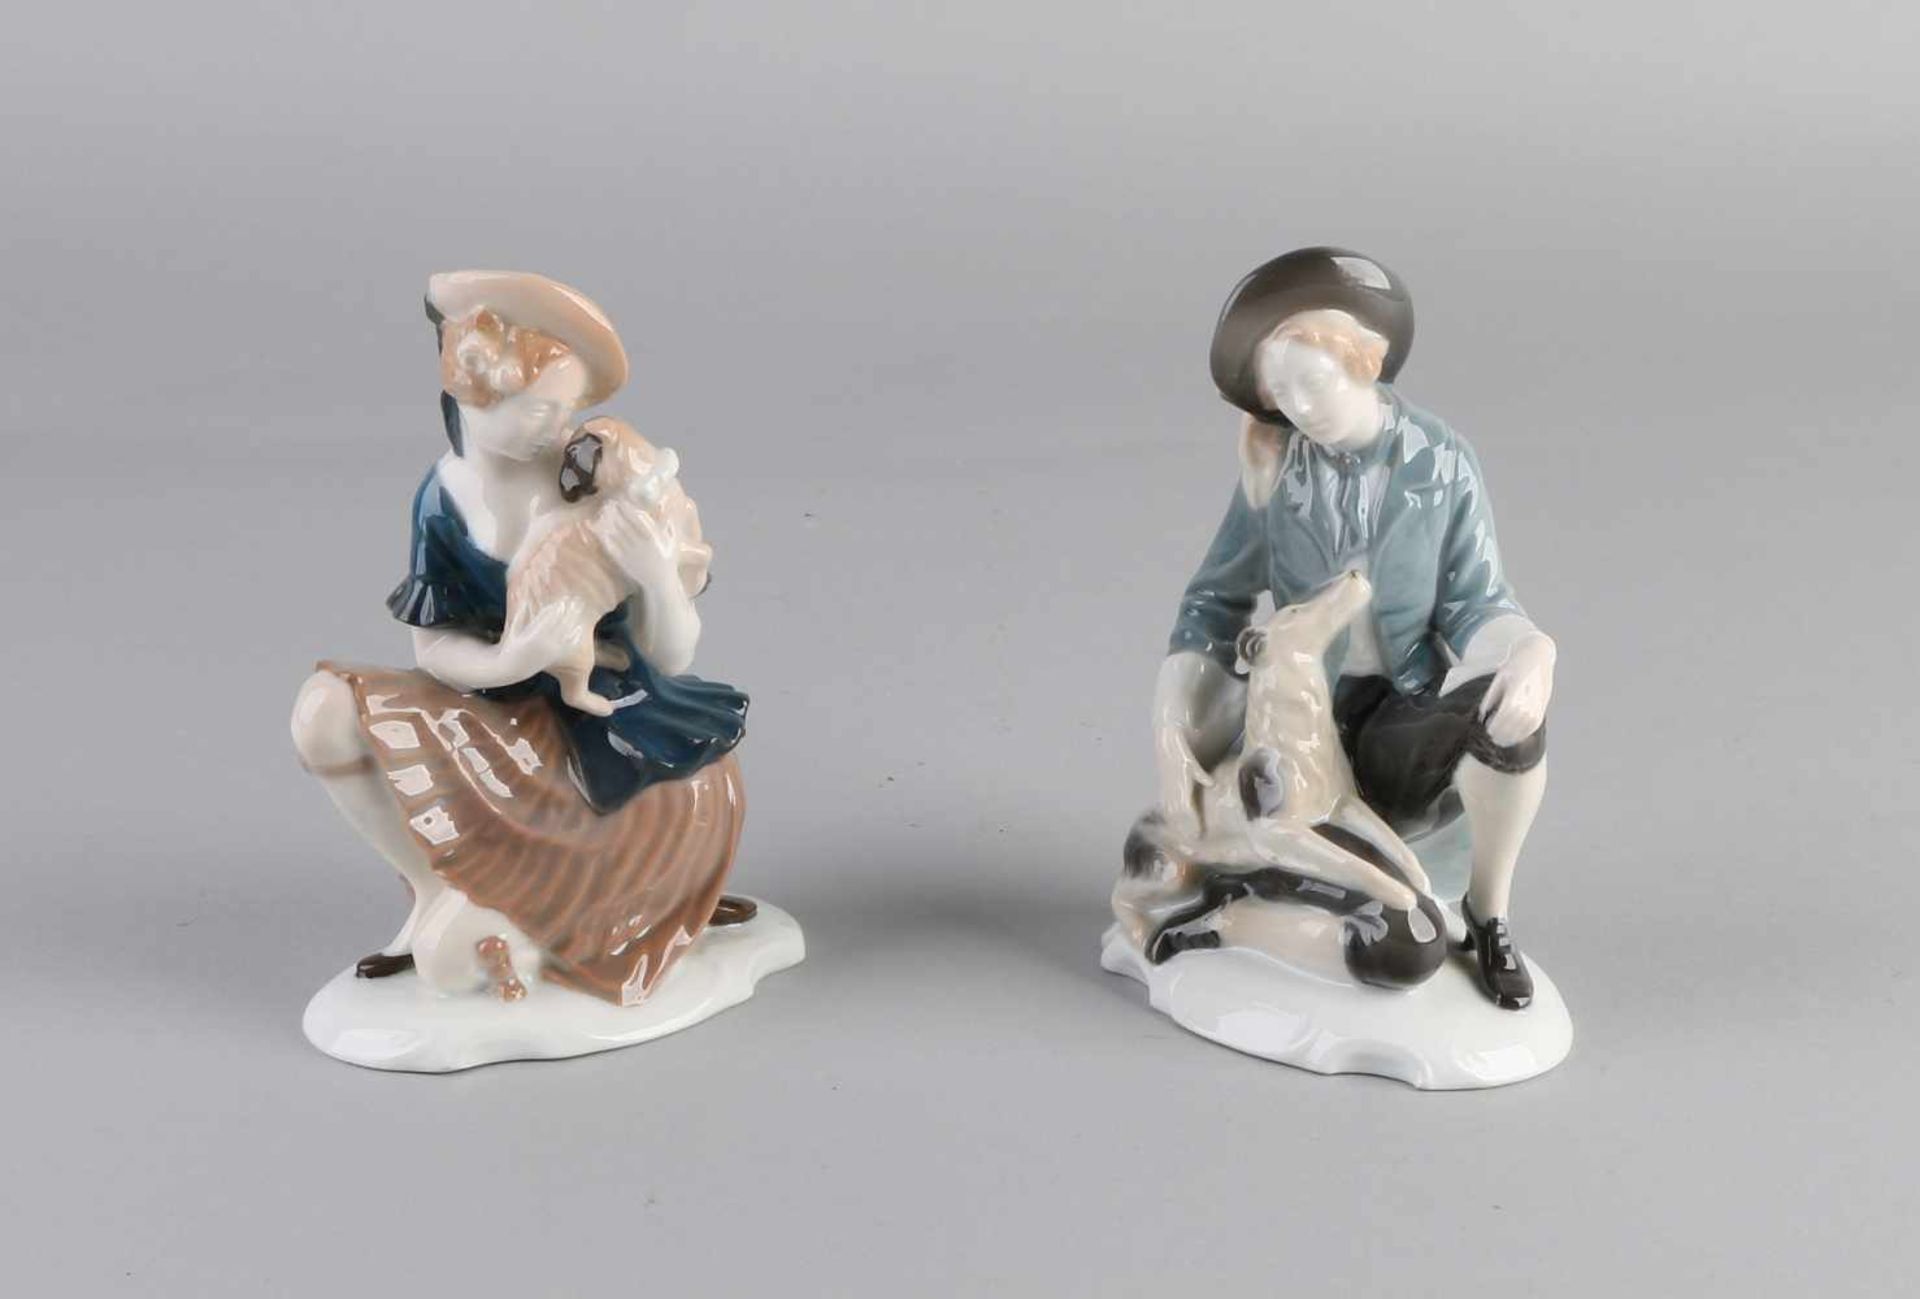 Zwei deutsche Rosenthal Porzellanfiguren. Selb Bayern. Figuren mit Hunden. Größe: 15 - 16 cm. In